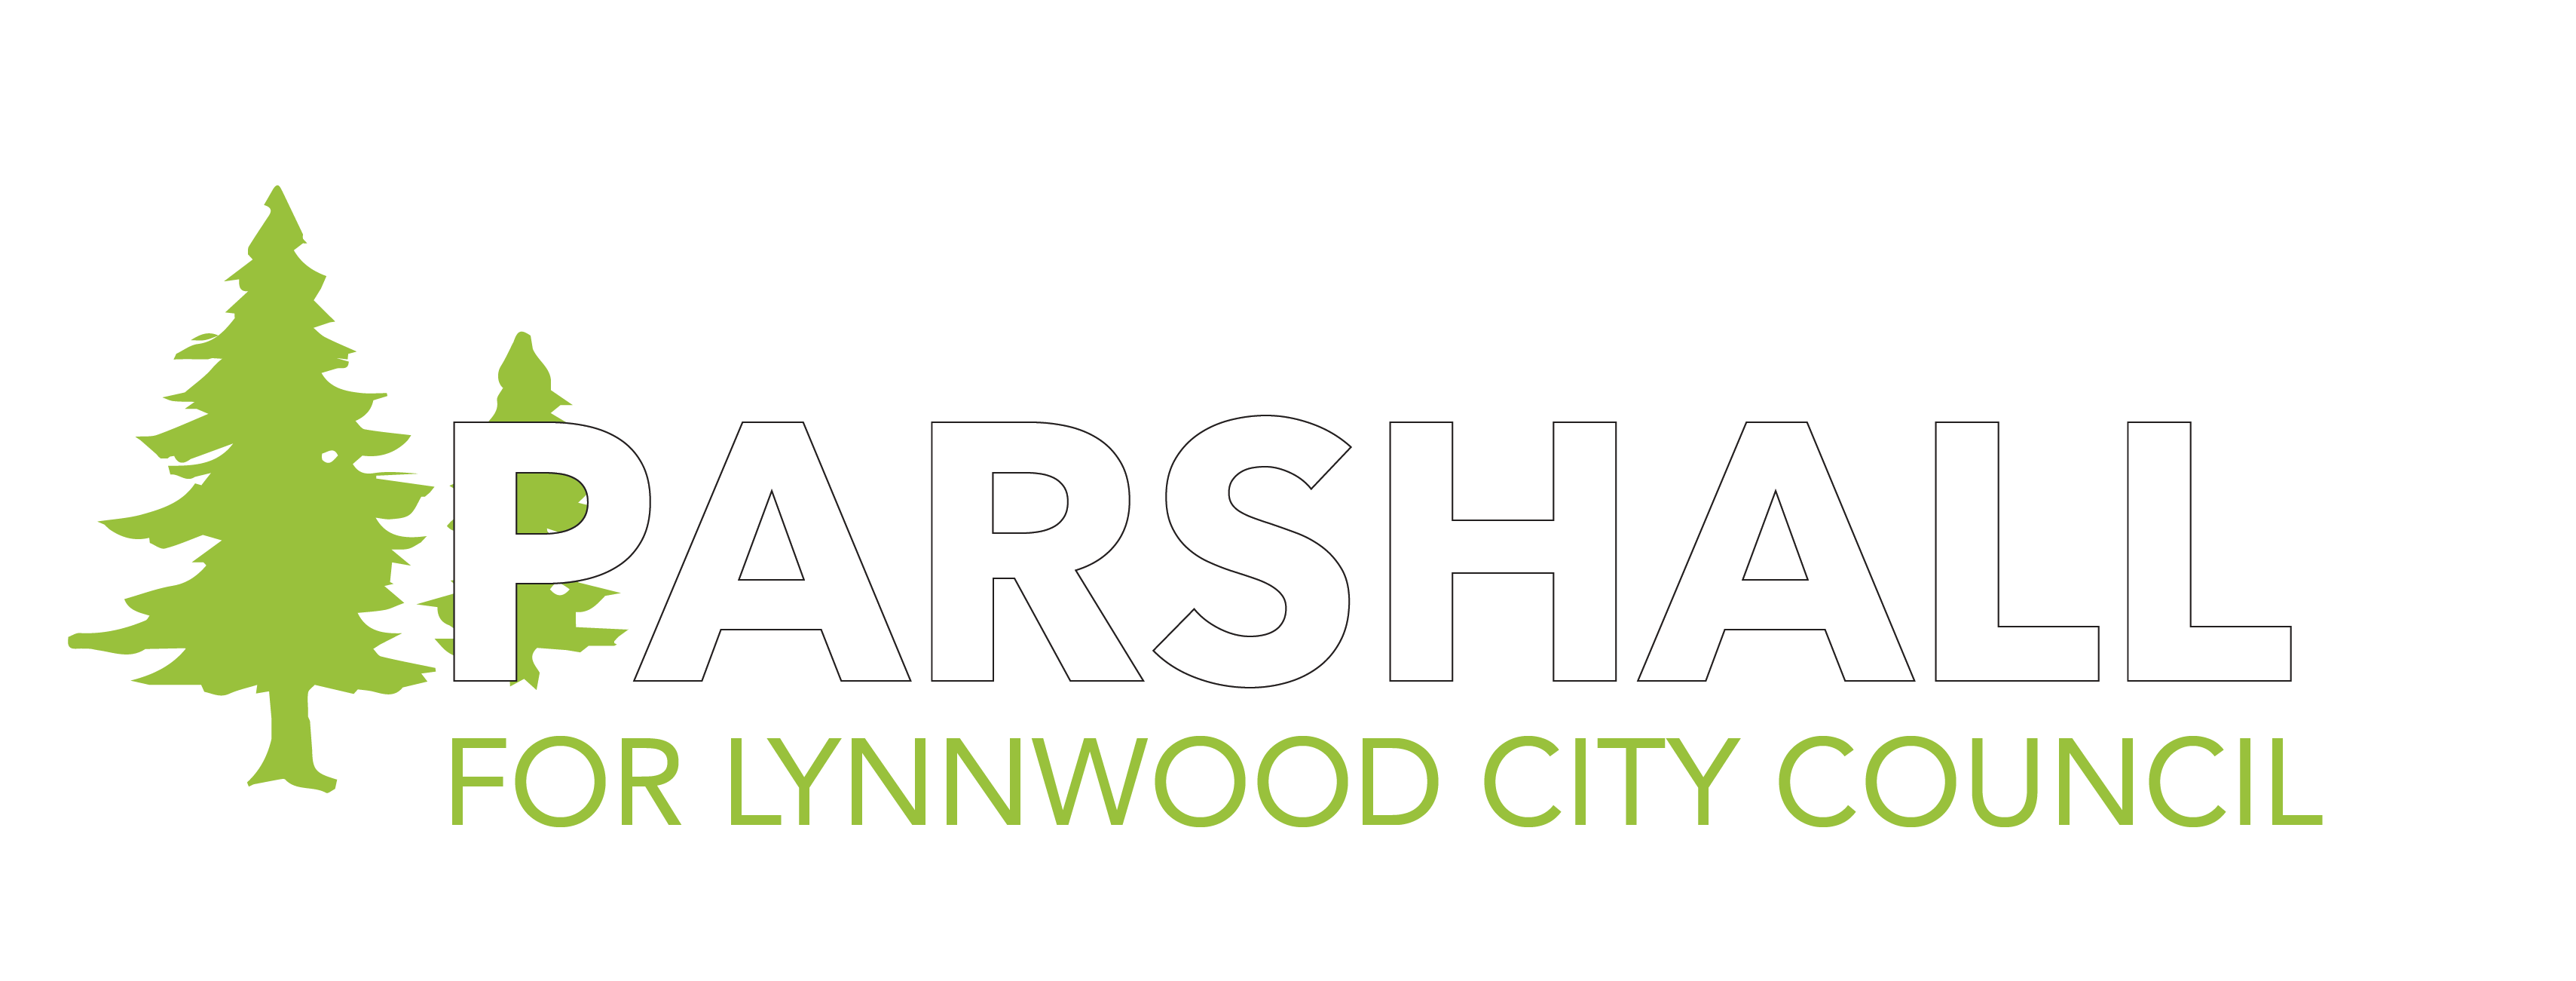 David Parshall horizontal logo